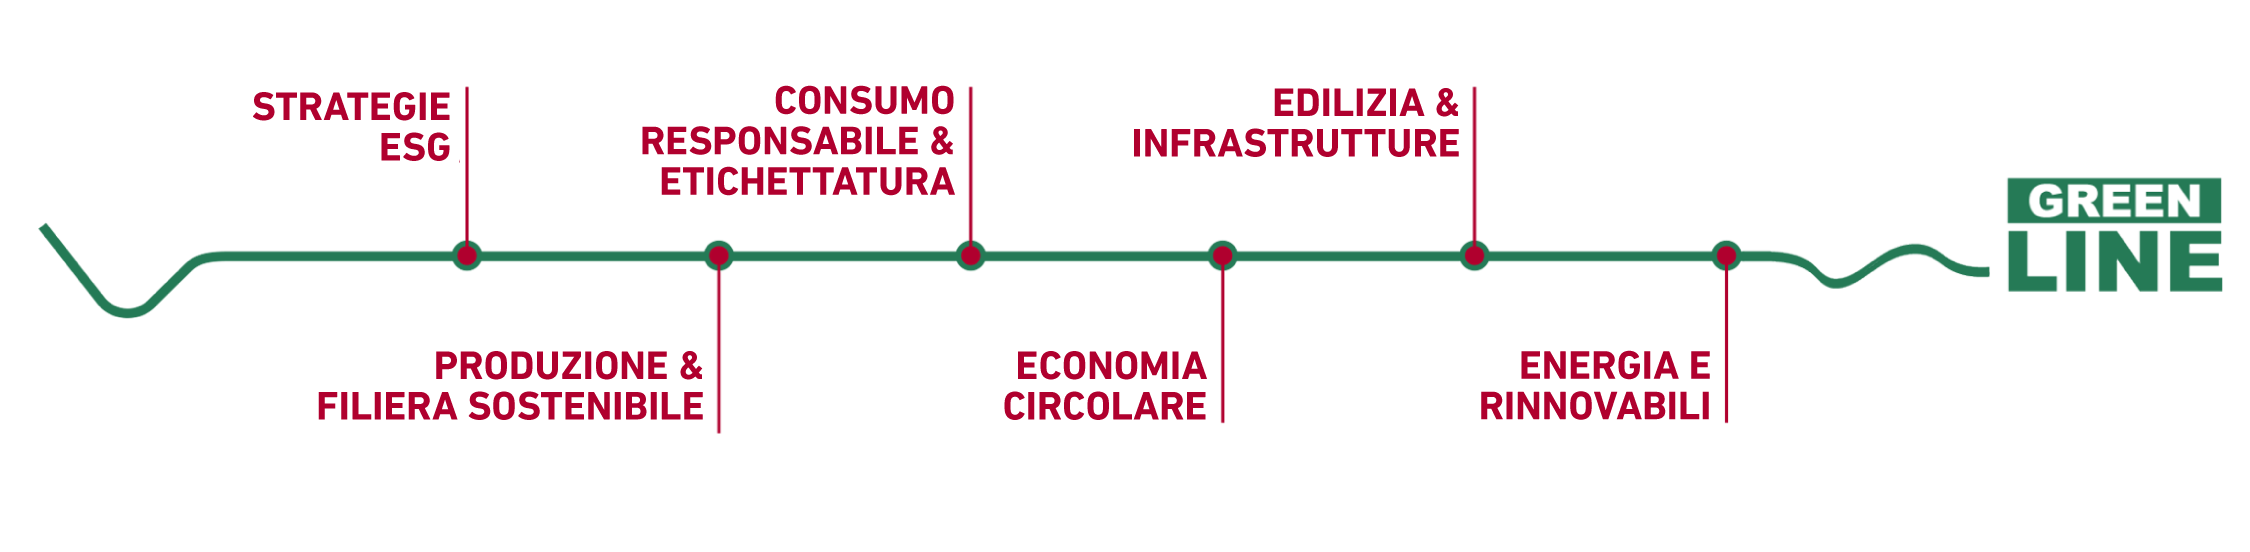 Infografica Green Line Bureau Veritas Nexta